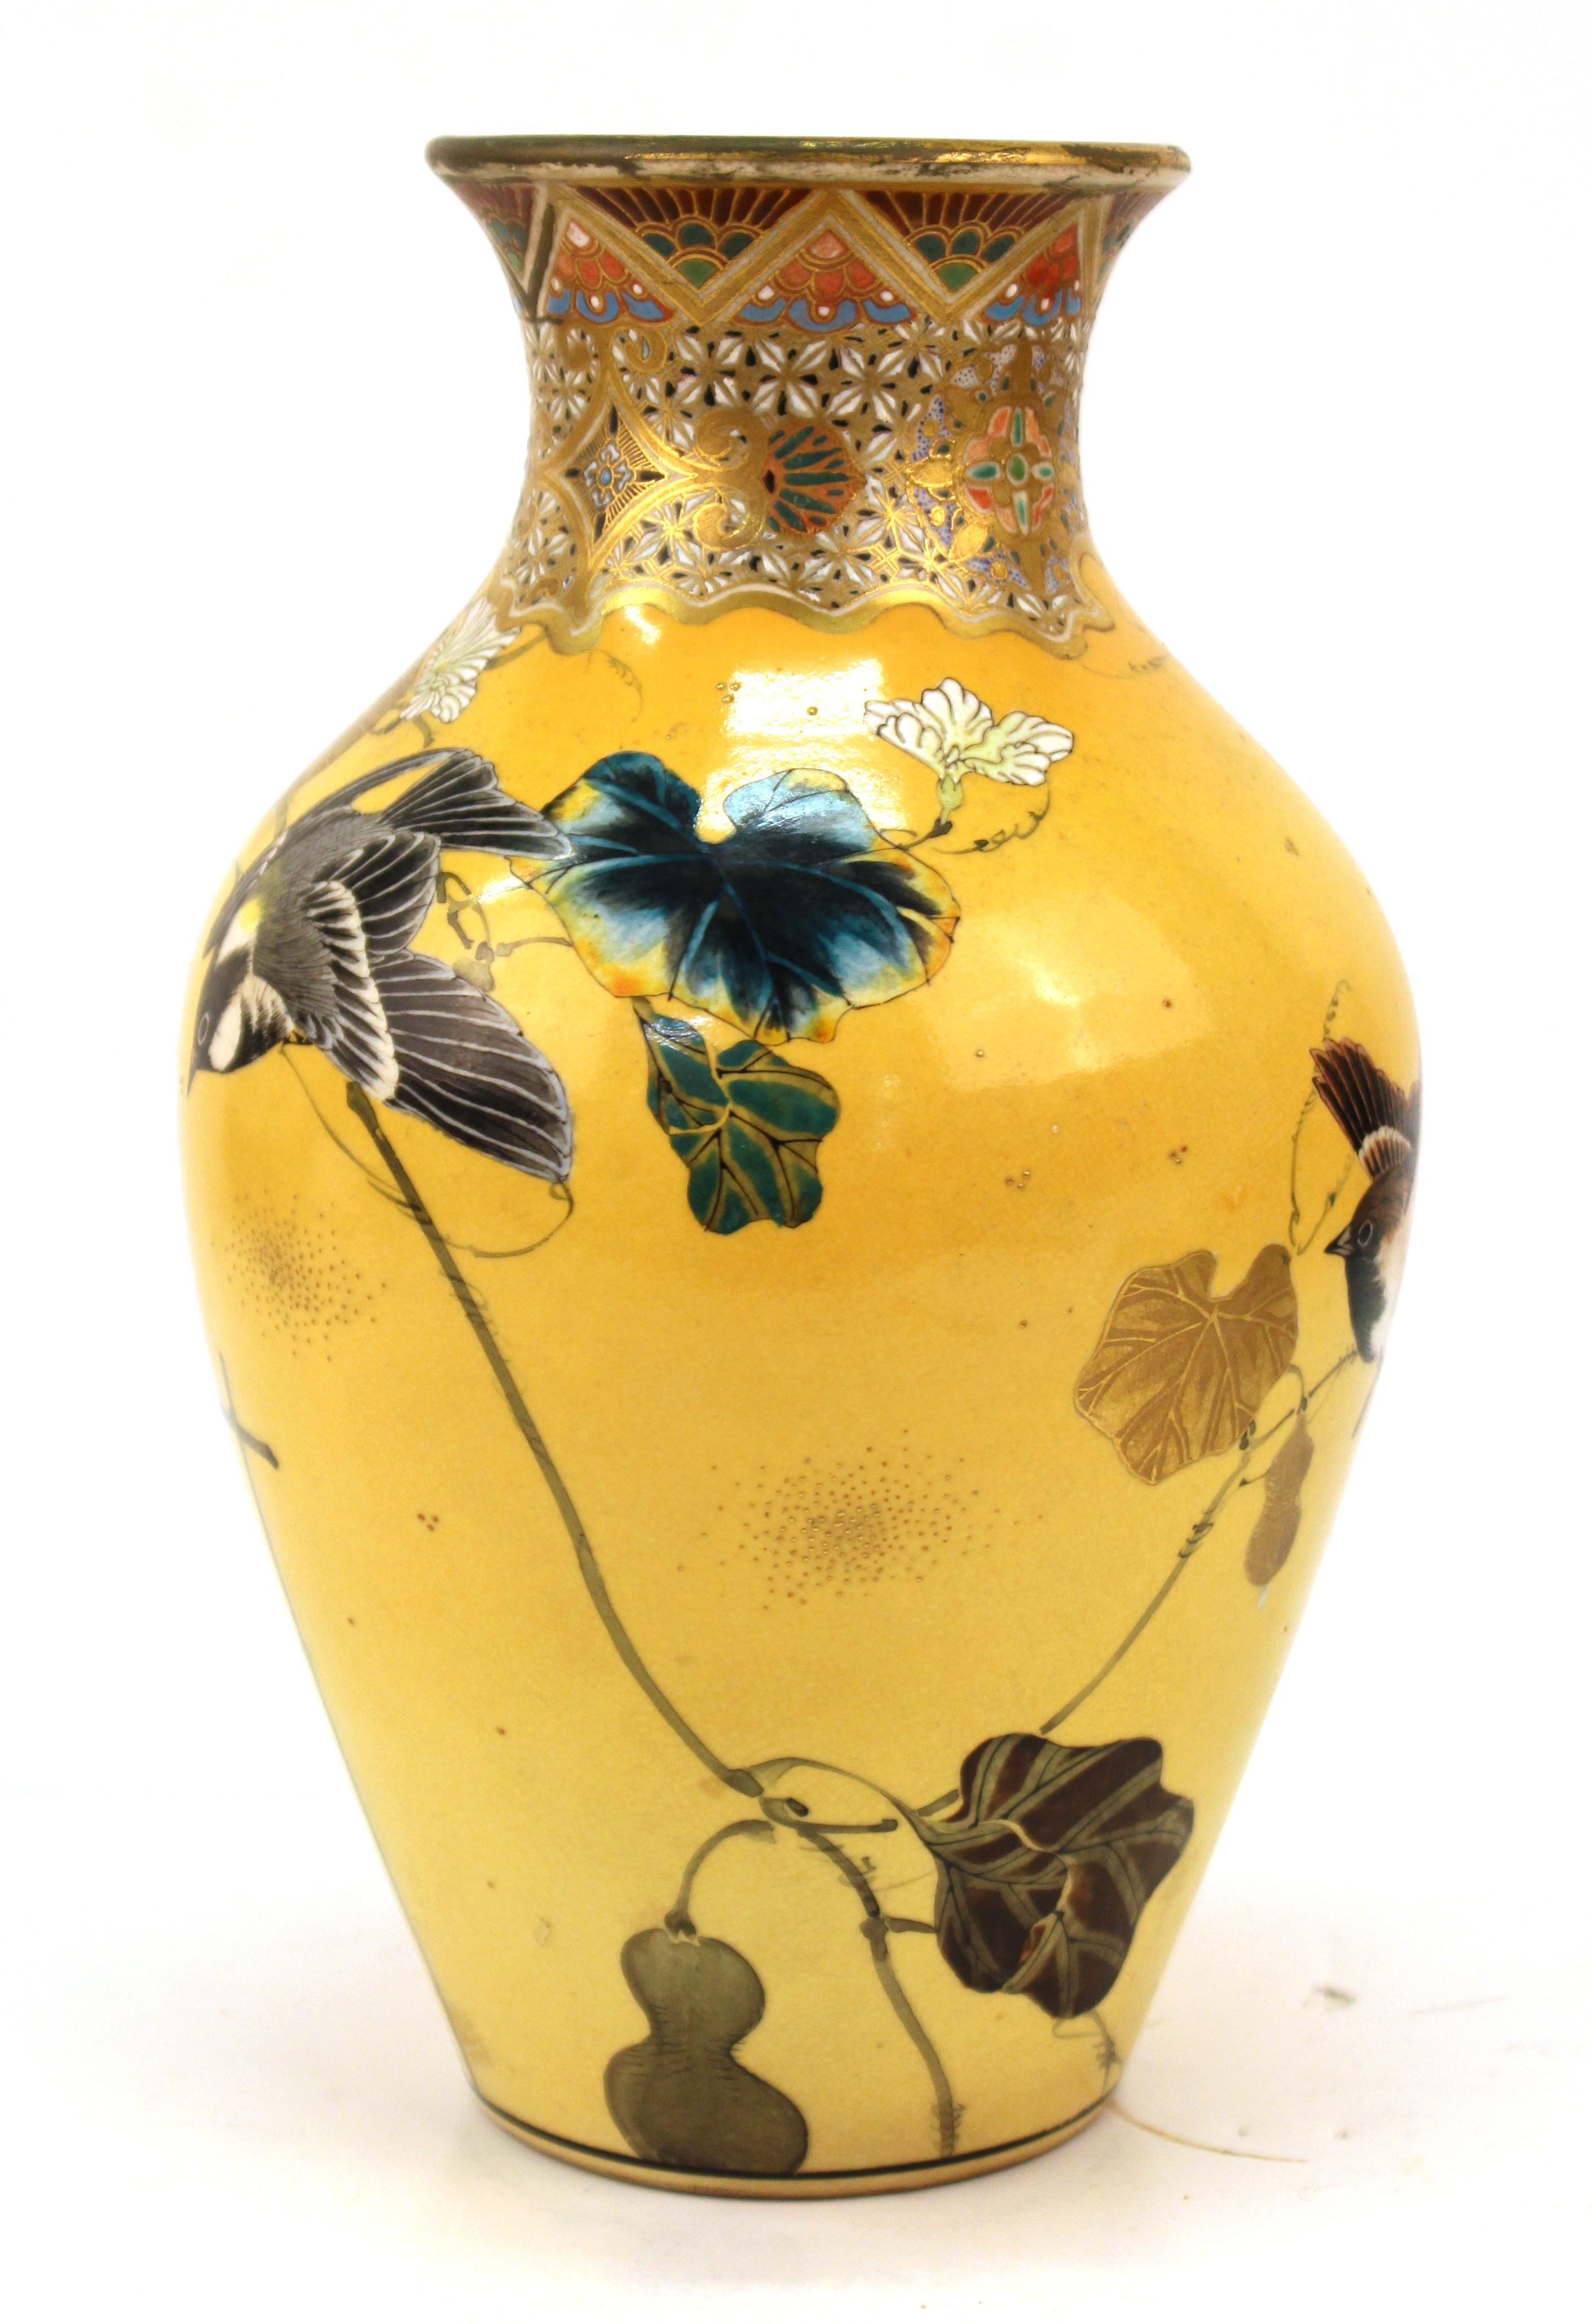 19th Century Japanese Meiji Satsuma Vase by Taizan Yohei With Enamel Decor by Kono Bairei